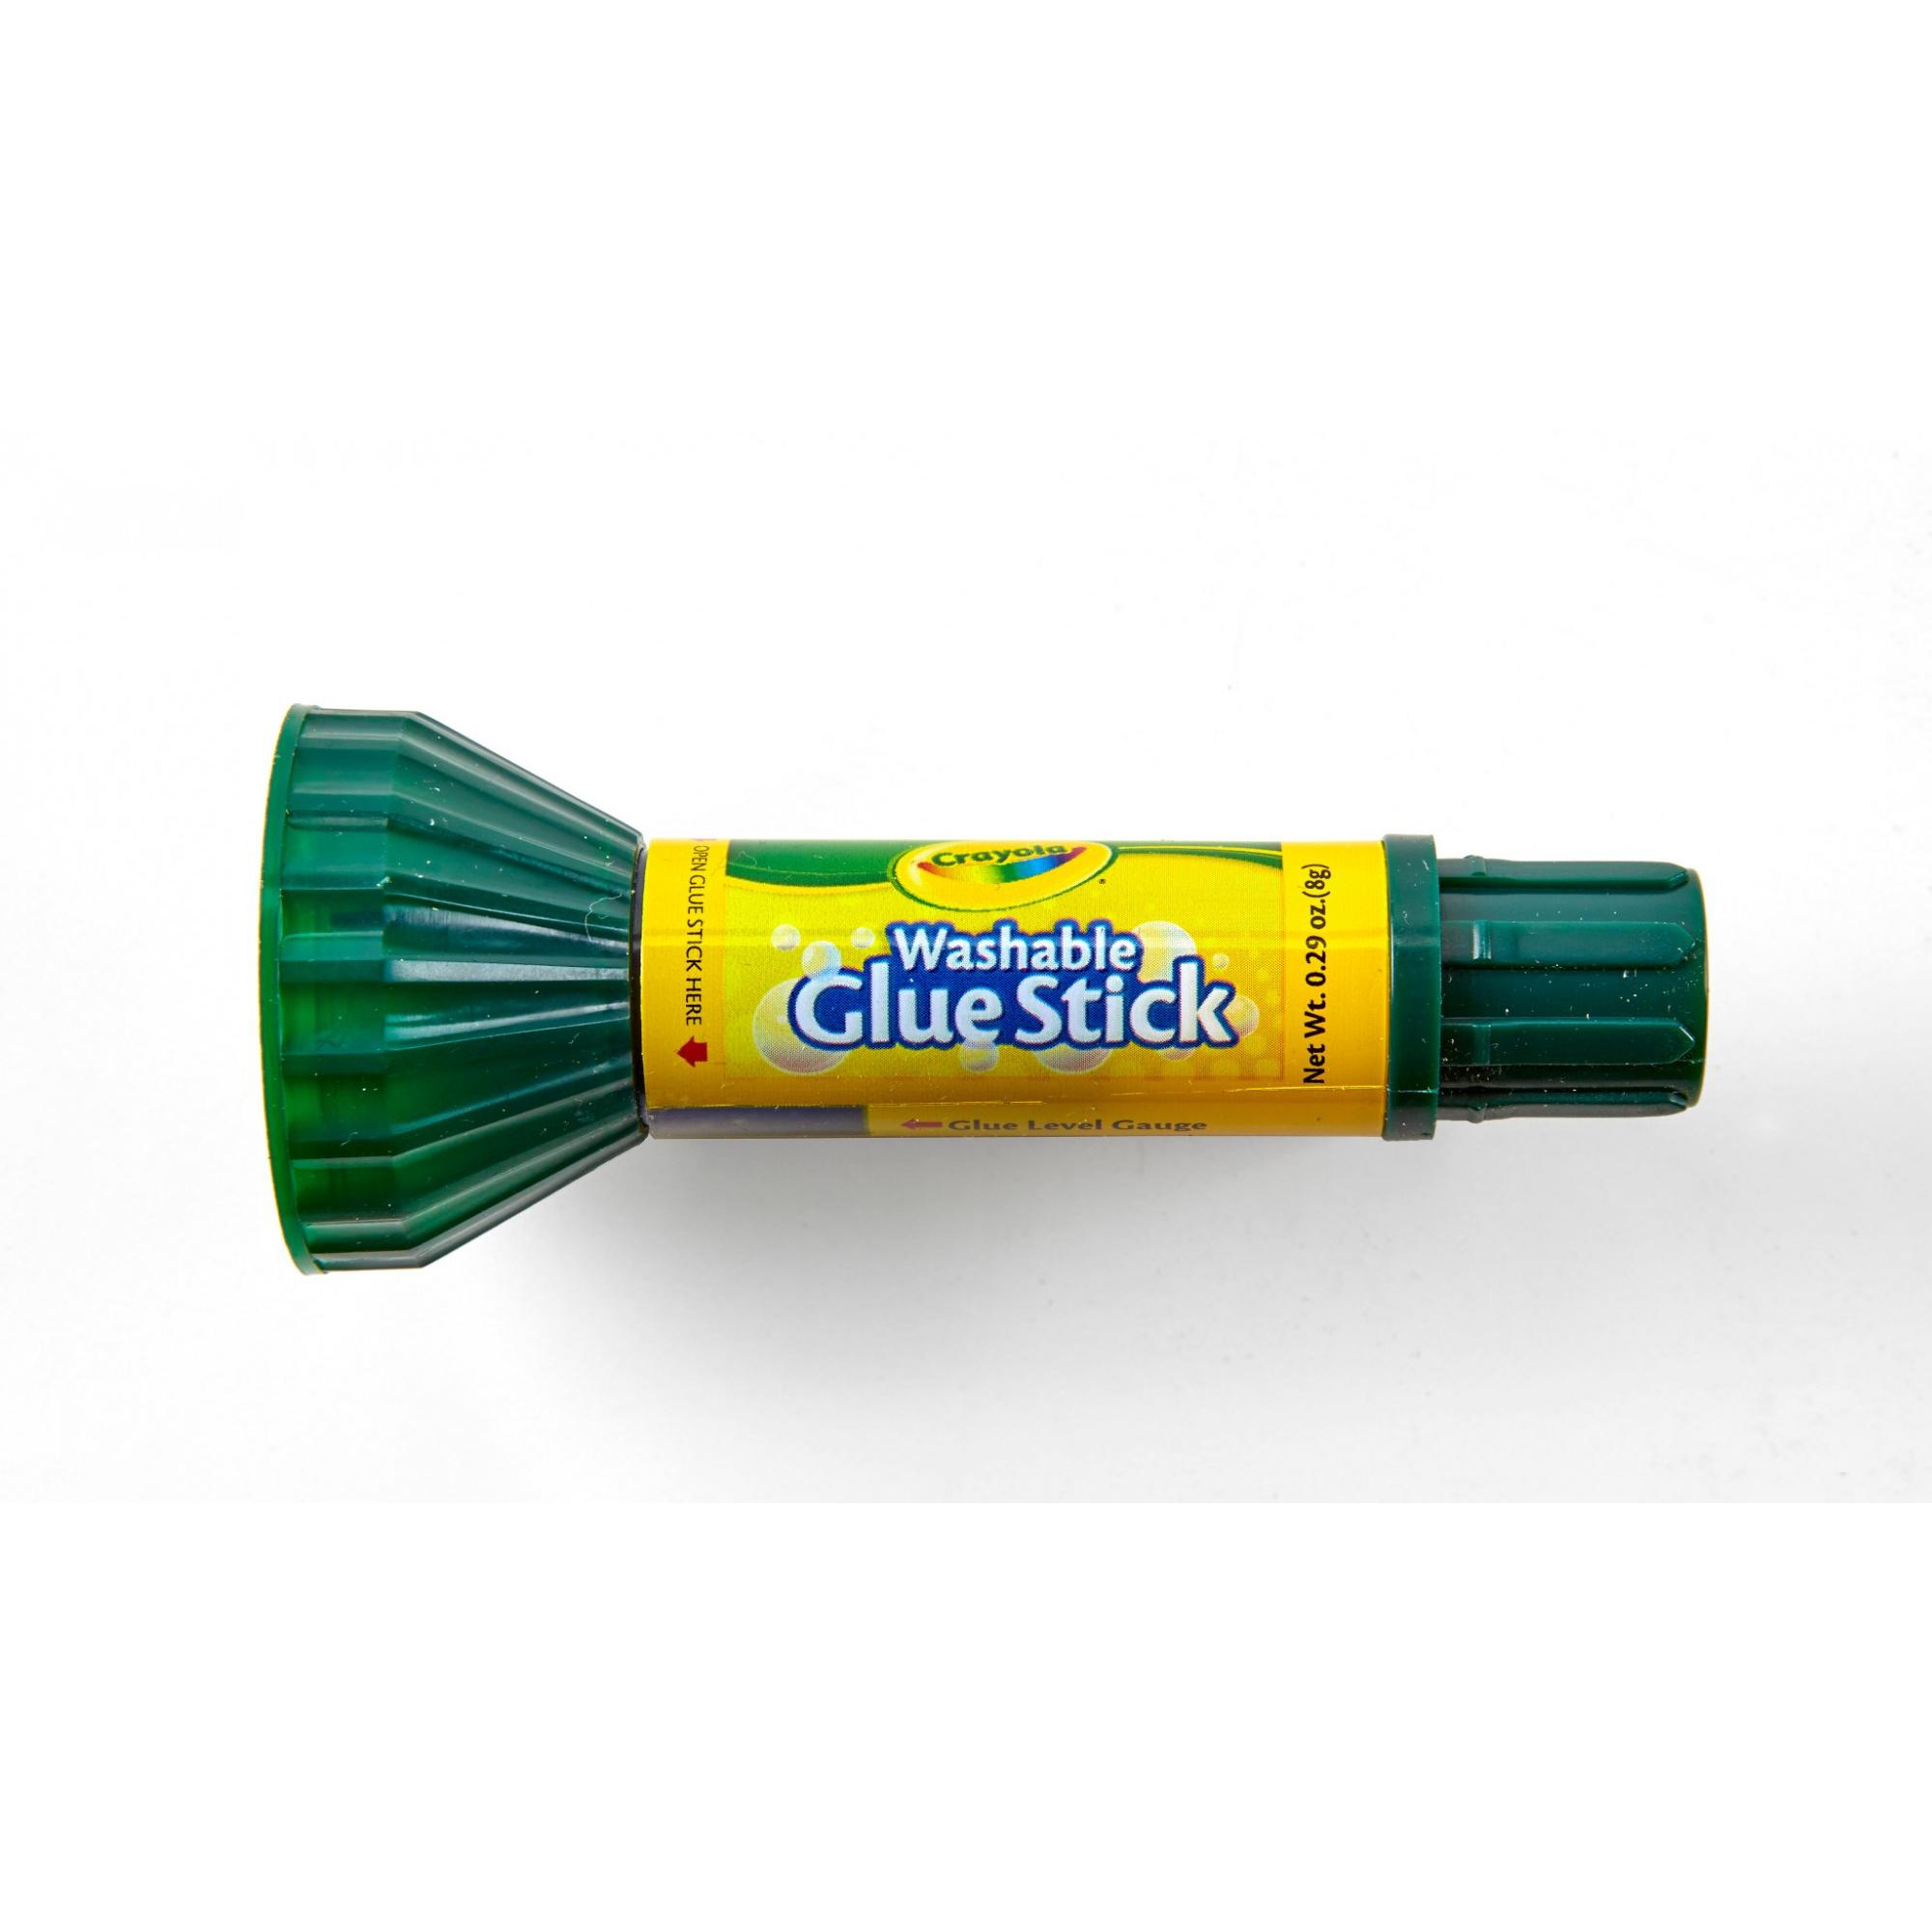 Crayola Washable Glue Stick (12/Pack)